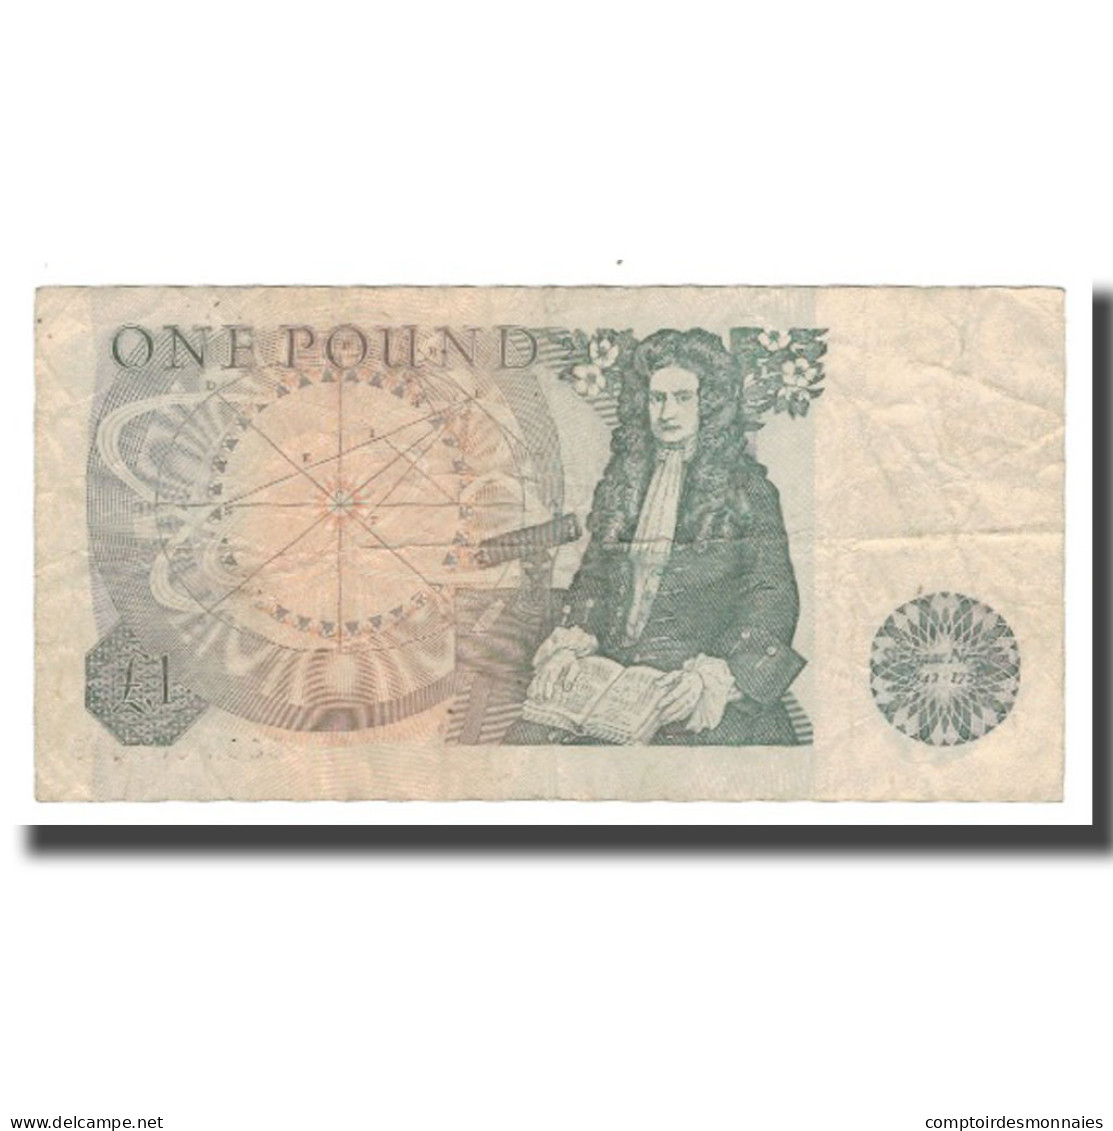 Billet, Grande-Bretagne, 1 Pound, Undated (1978-84), Undated (1978-1980) - 1 Pound